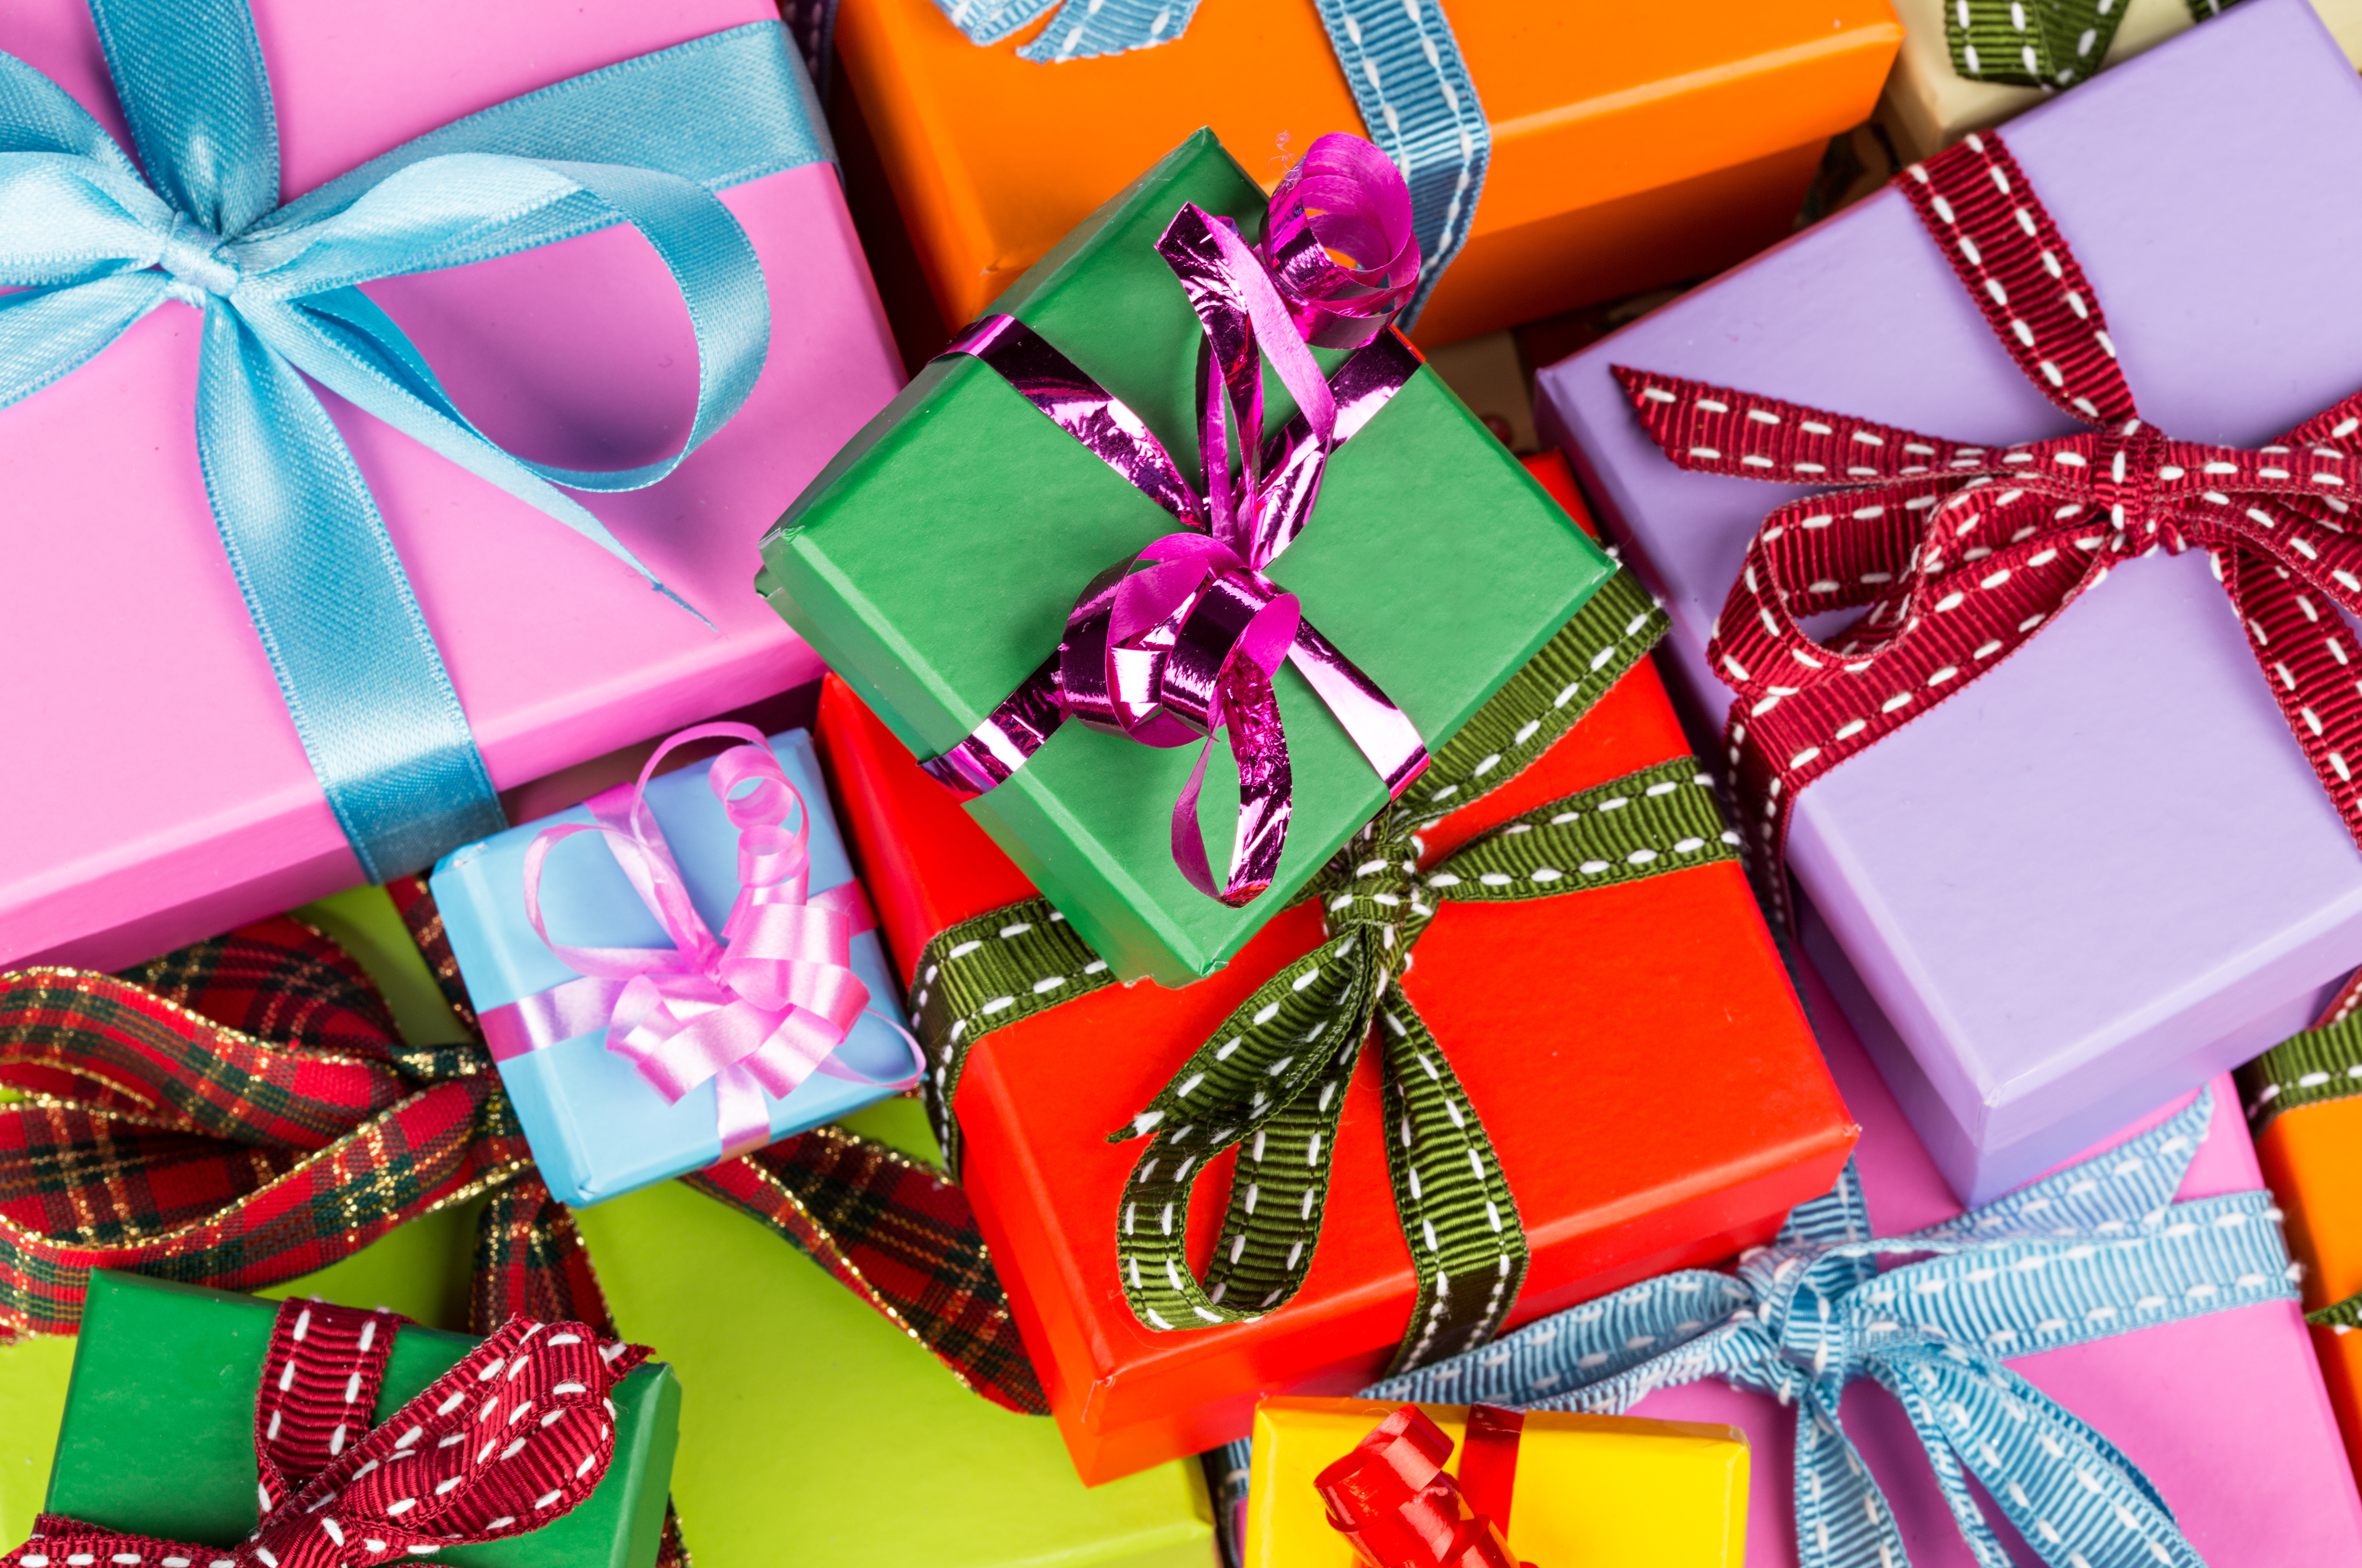 Kinds of presents. Красивые подарки. Яркие коробки с подарками. Красивая подарочная коробка. Коробки для подарков.